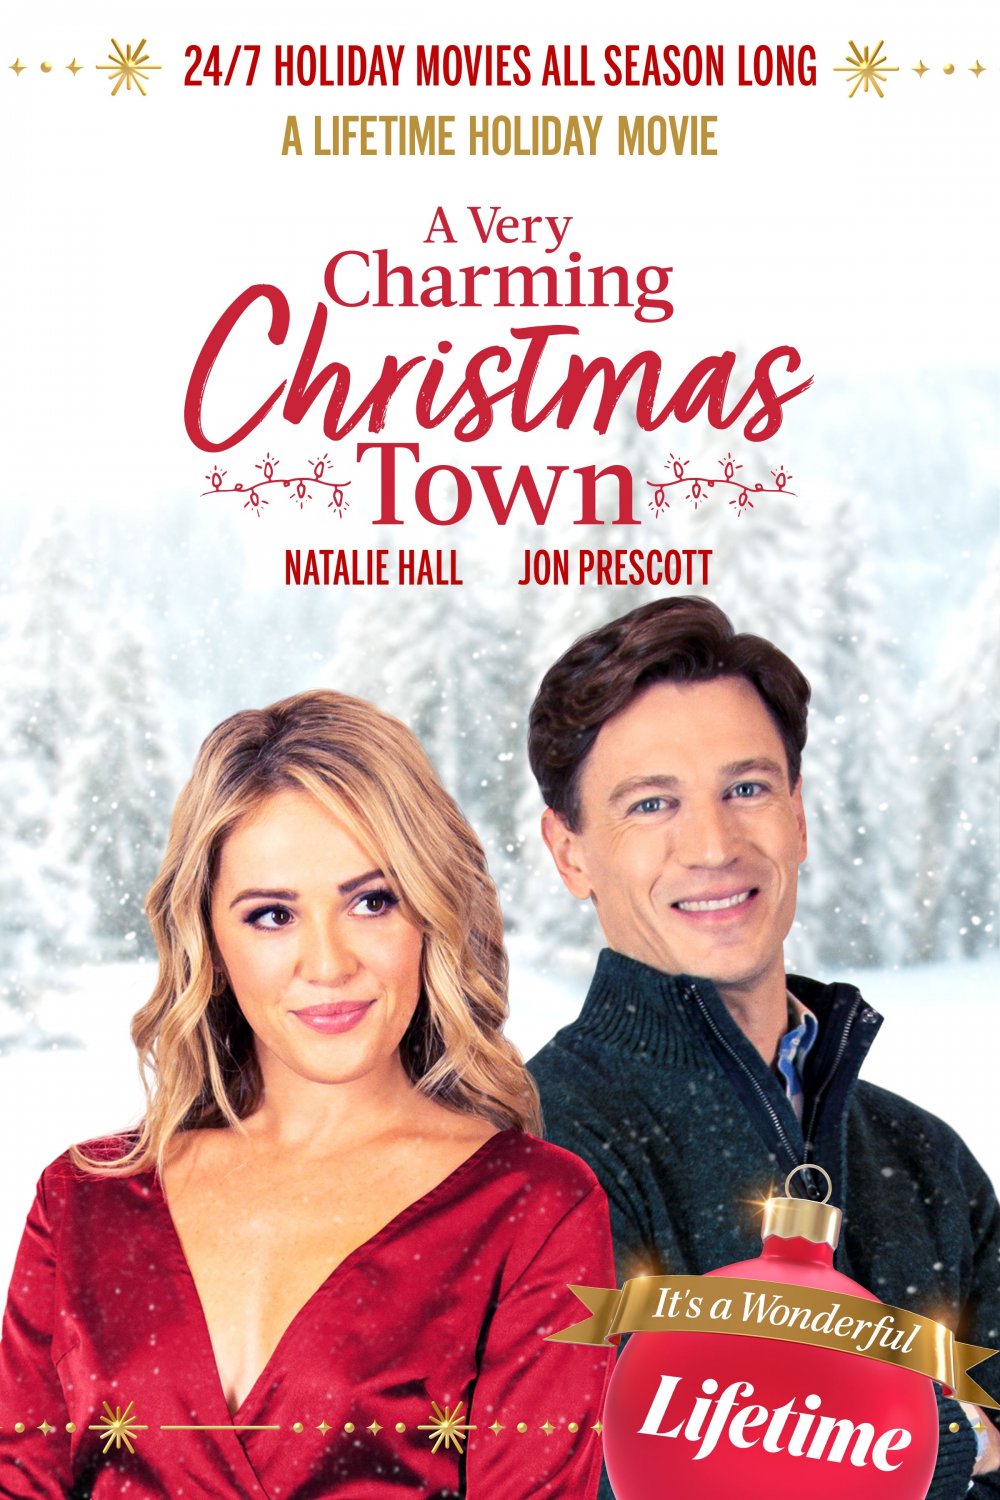 A Very Charming Christmas Town DVD 2020 Lifetime Movie Natalie Hall Jon Prescott